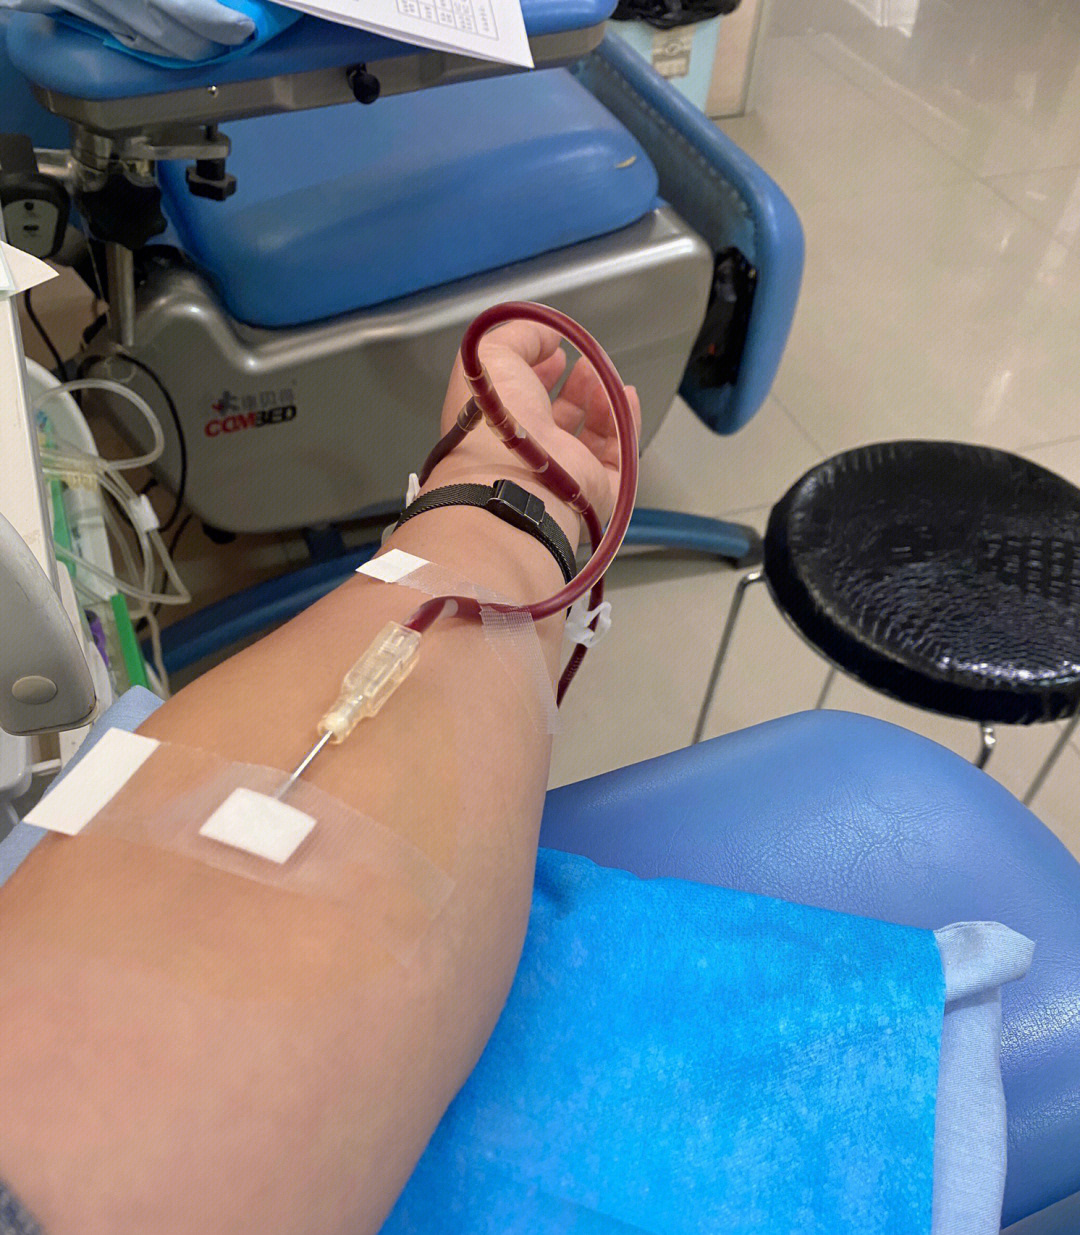 献血针和普通针对比图片